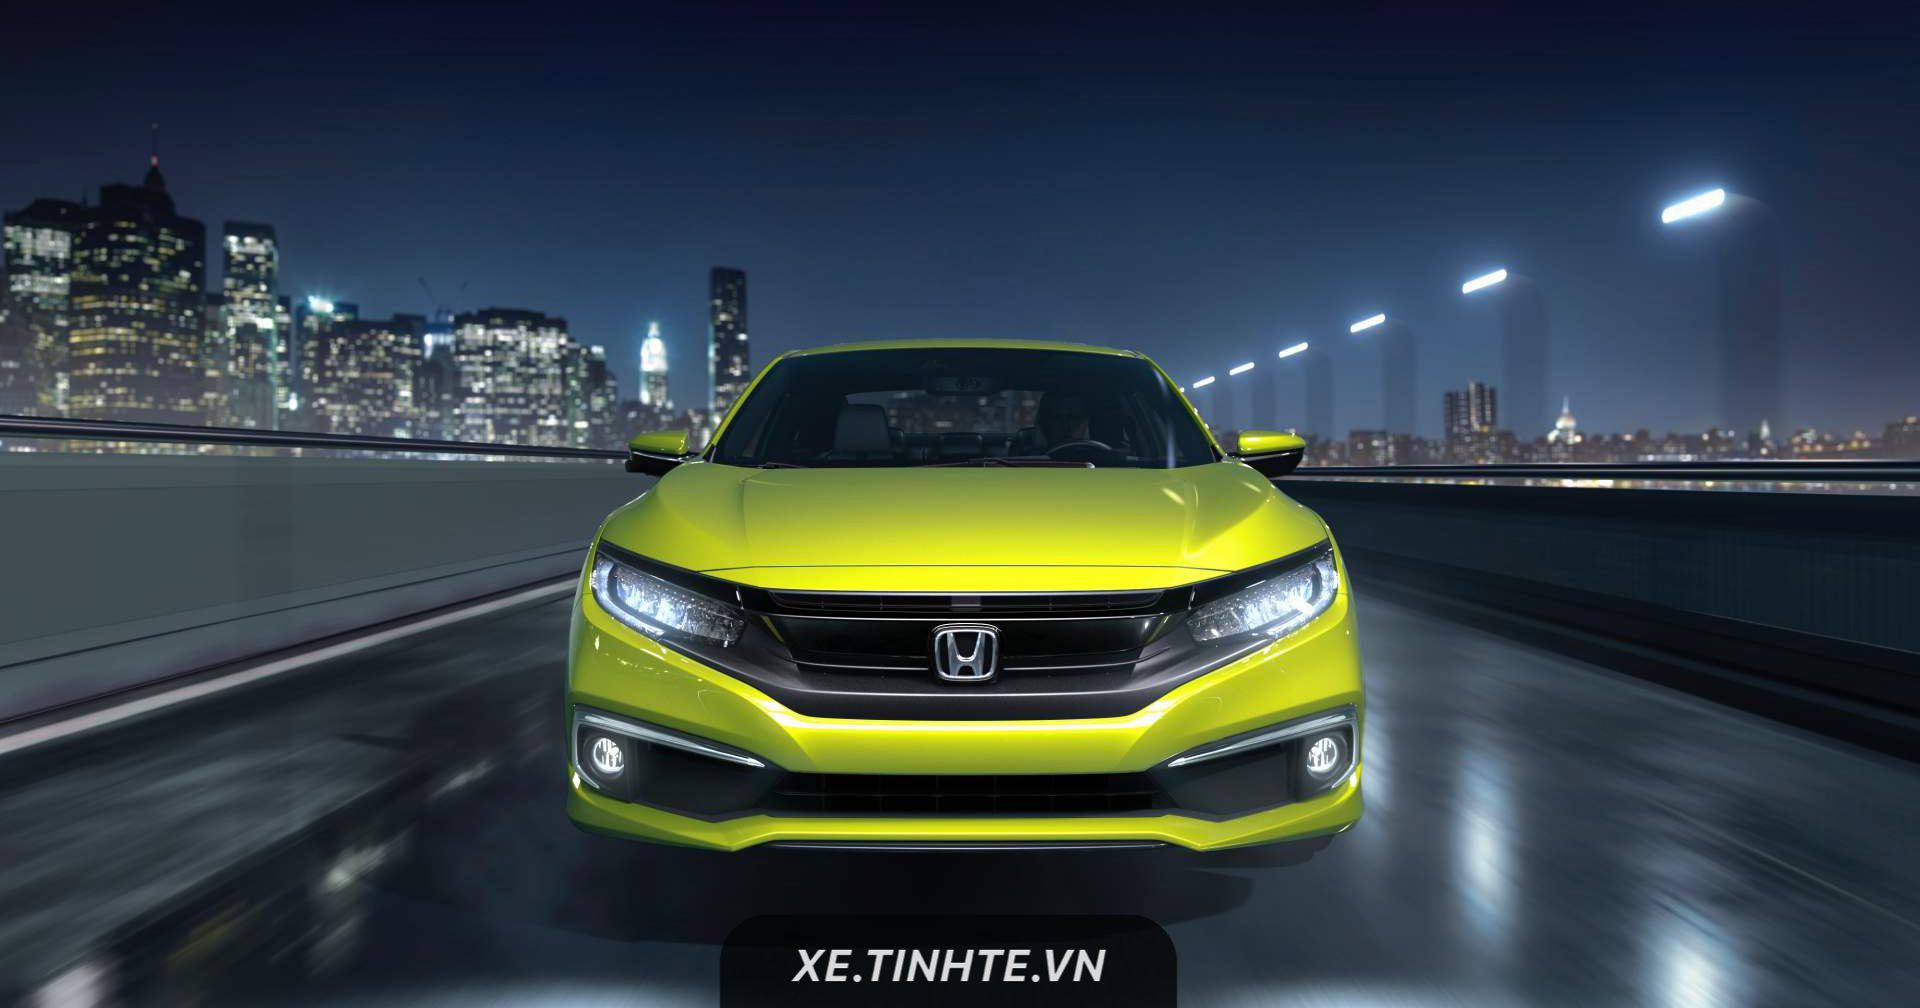 Honda giới thiệu Civic bản nâng cấp nhẹ 2019, thêm bản Sport, bổ sung tính năng, giá từ 20.345 USD